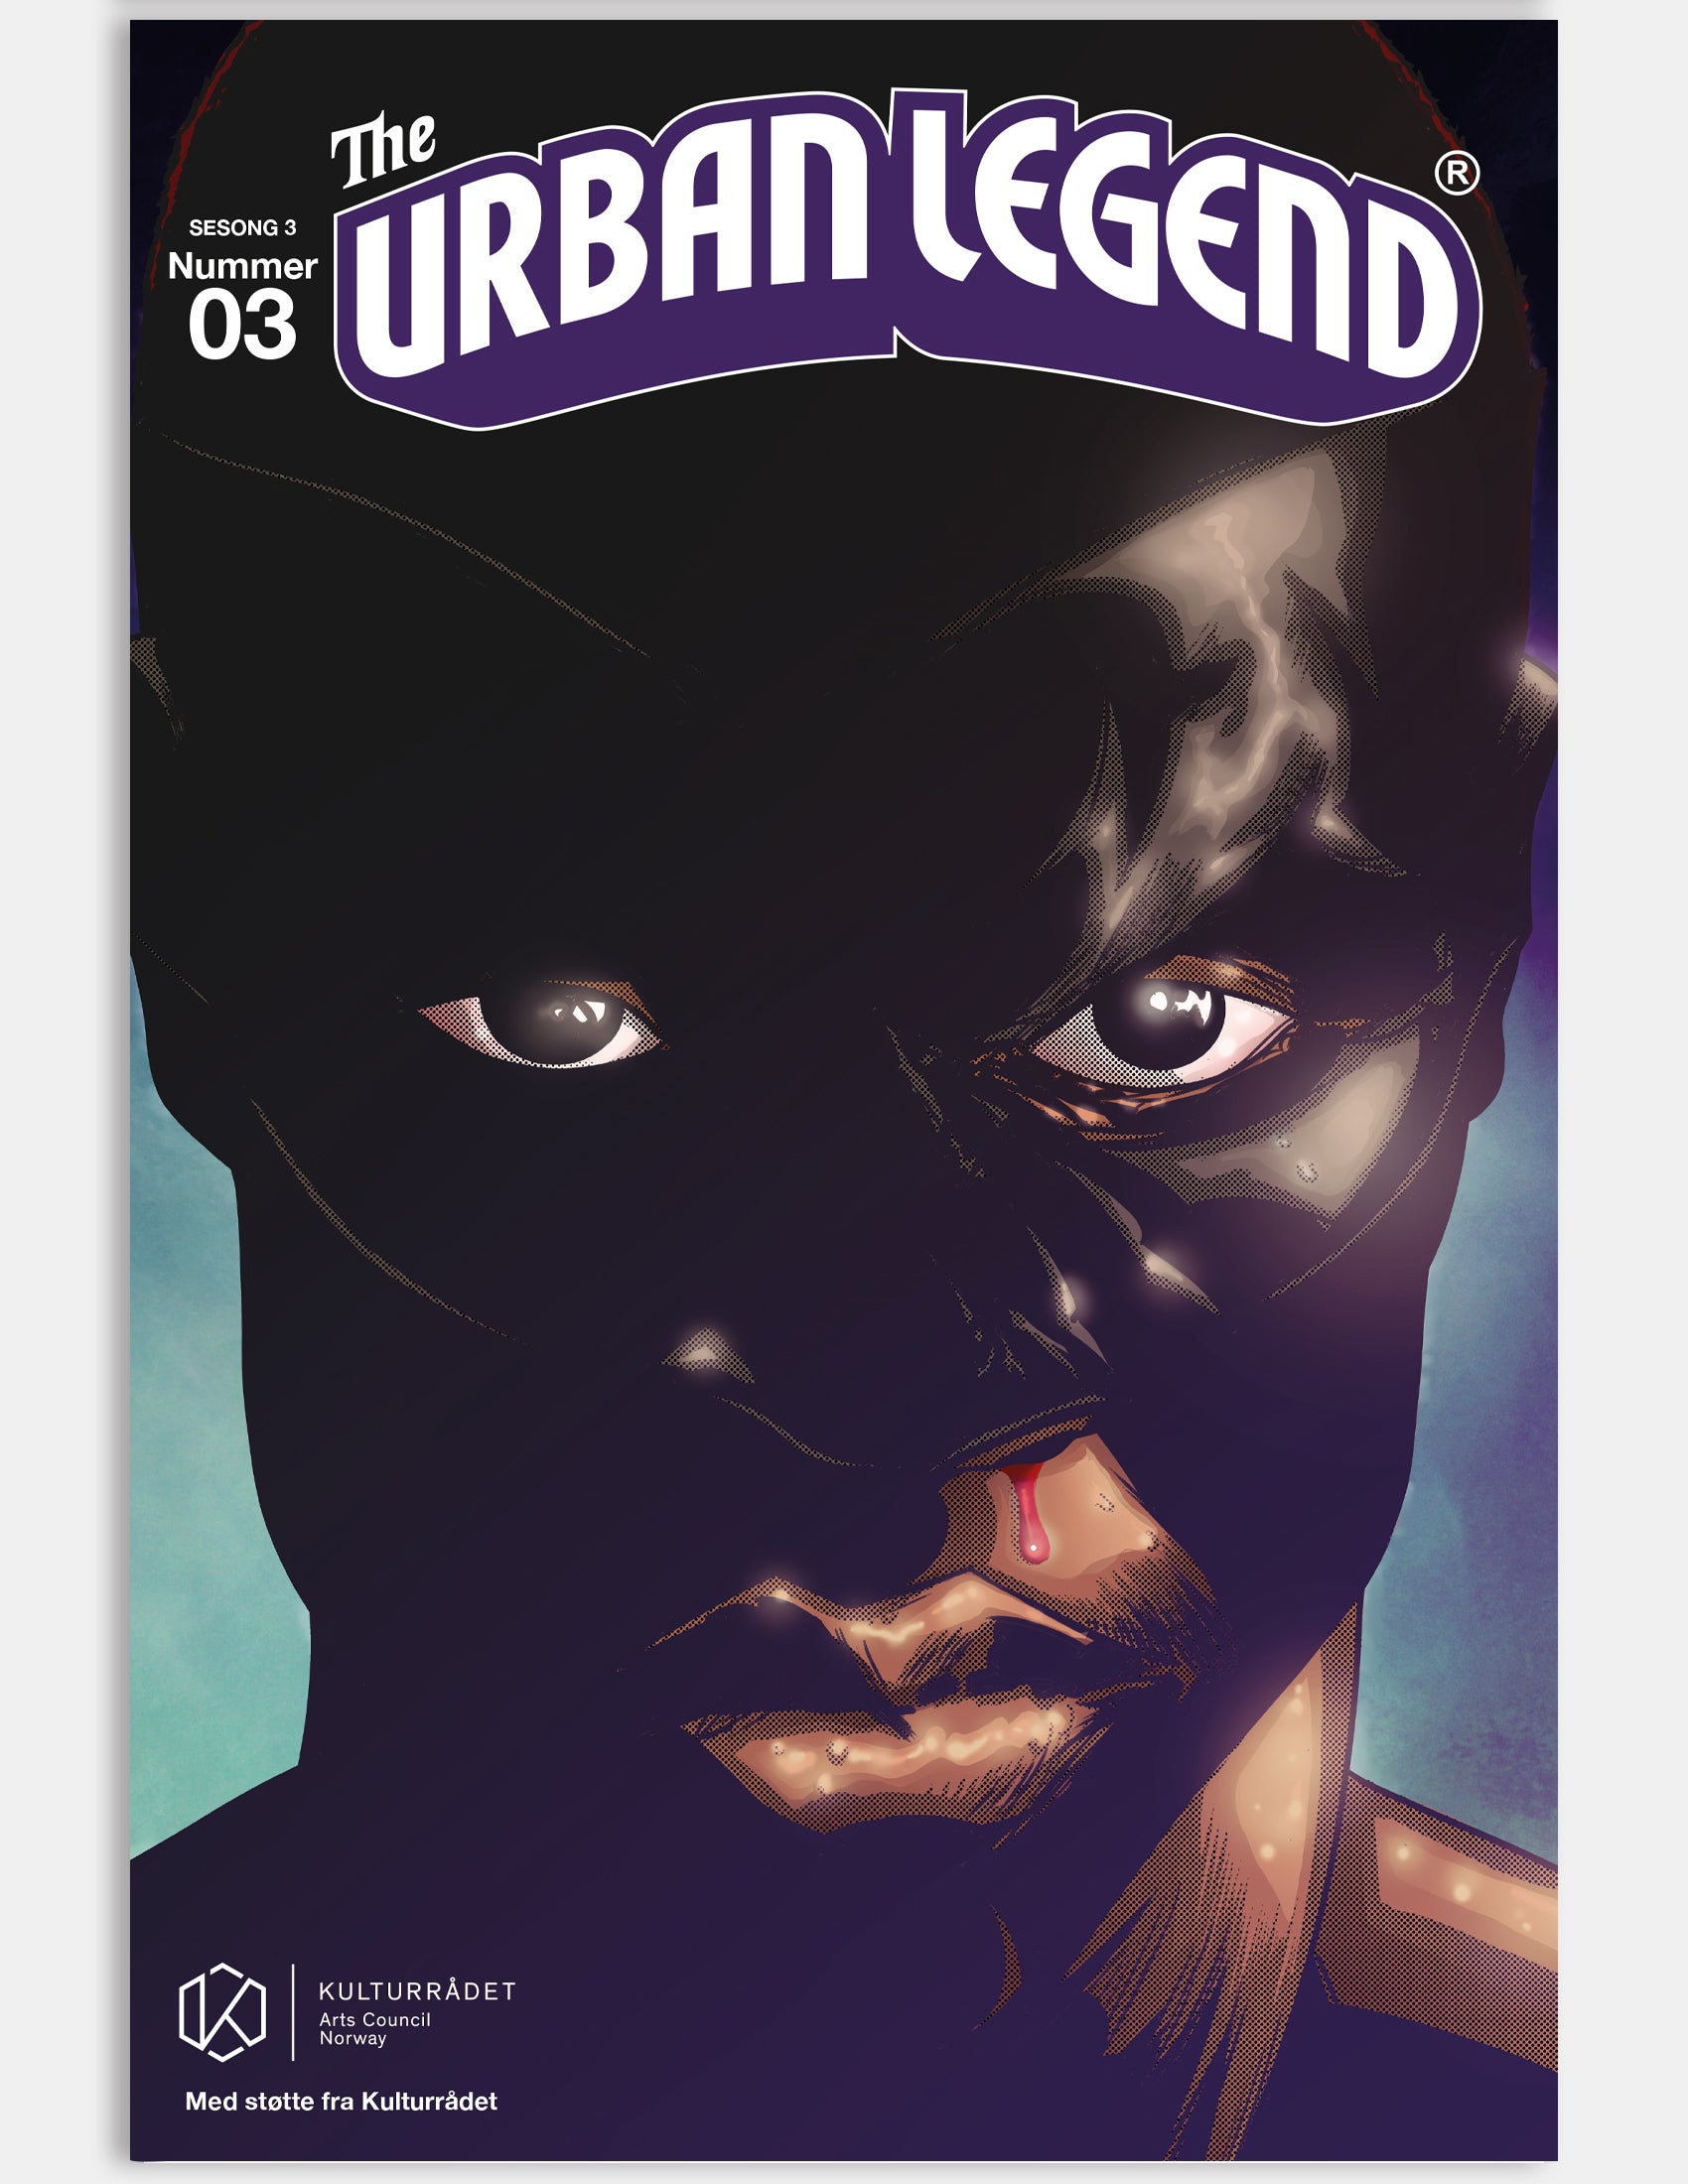 The Urban Legend - Ego (issue 3 - Season 3)